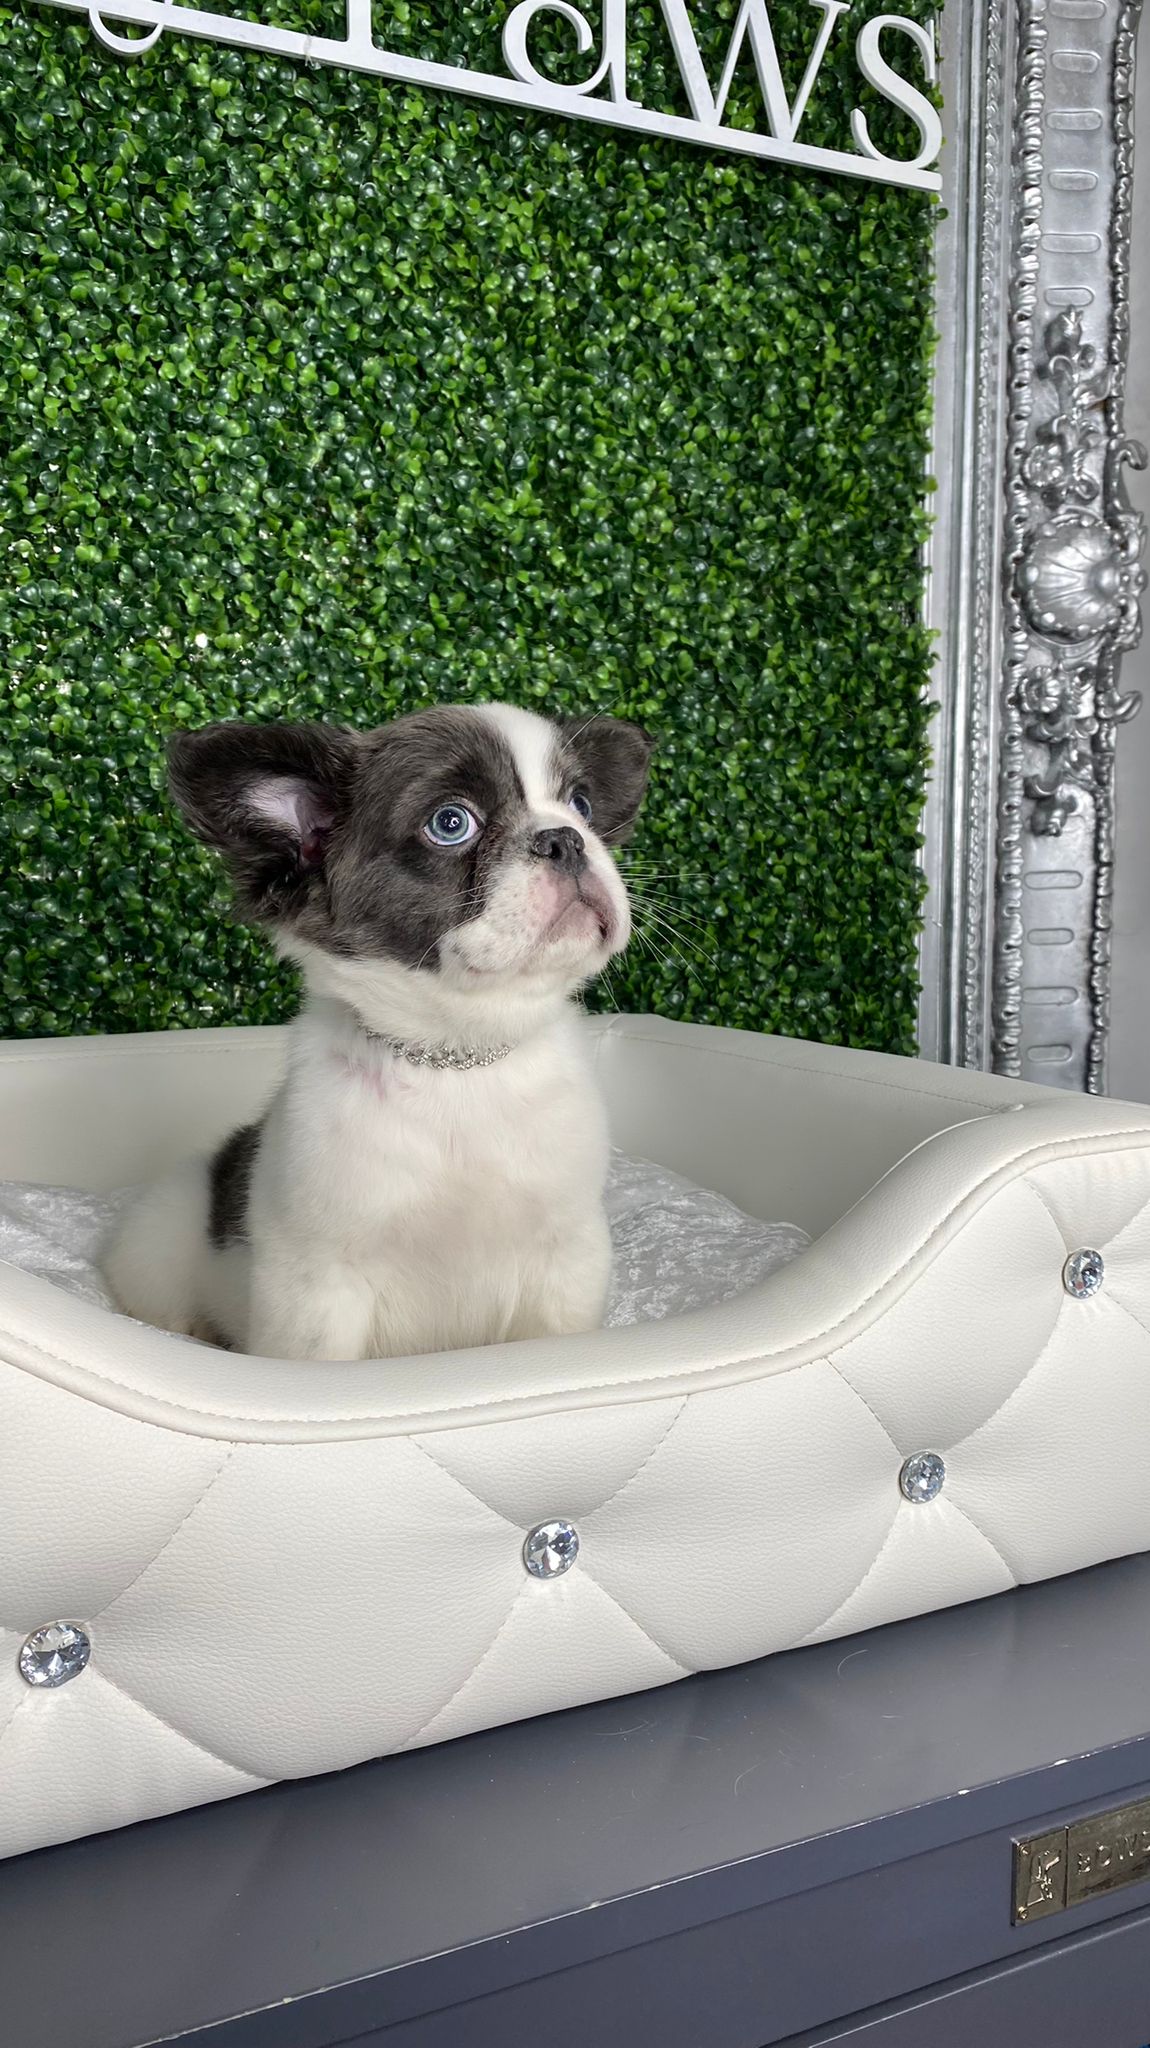 Bugatti Rare Fluffy French Bulldog Puppy For Sale